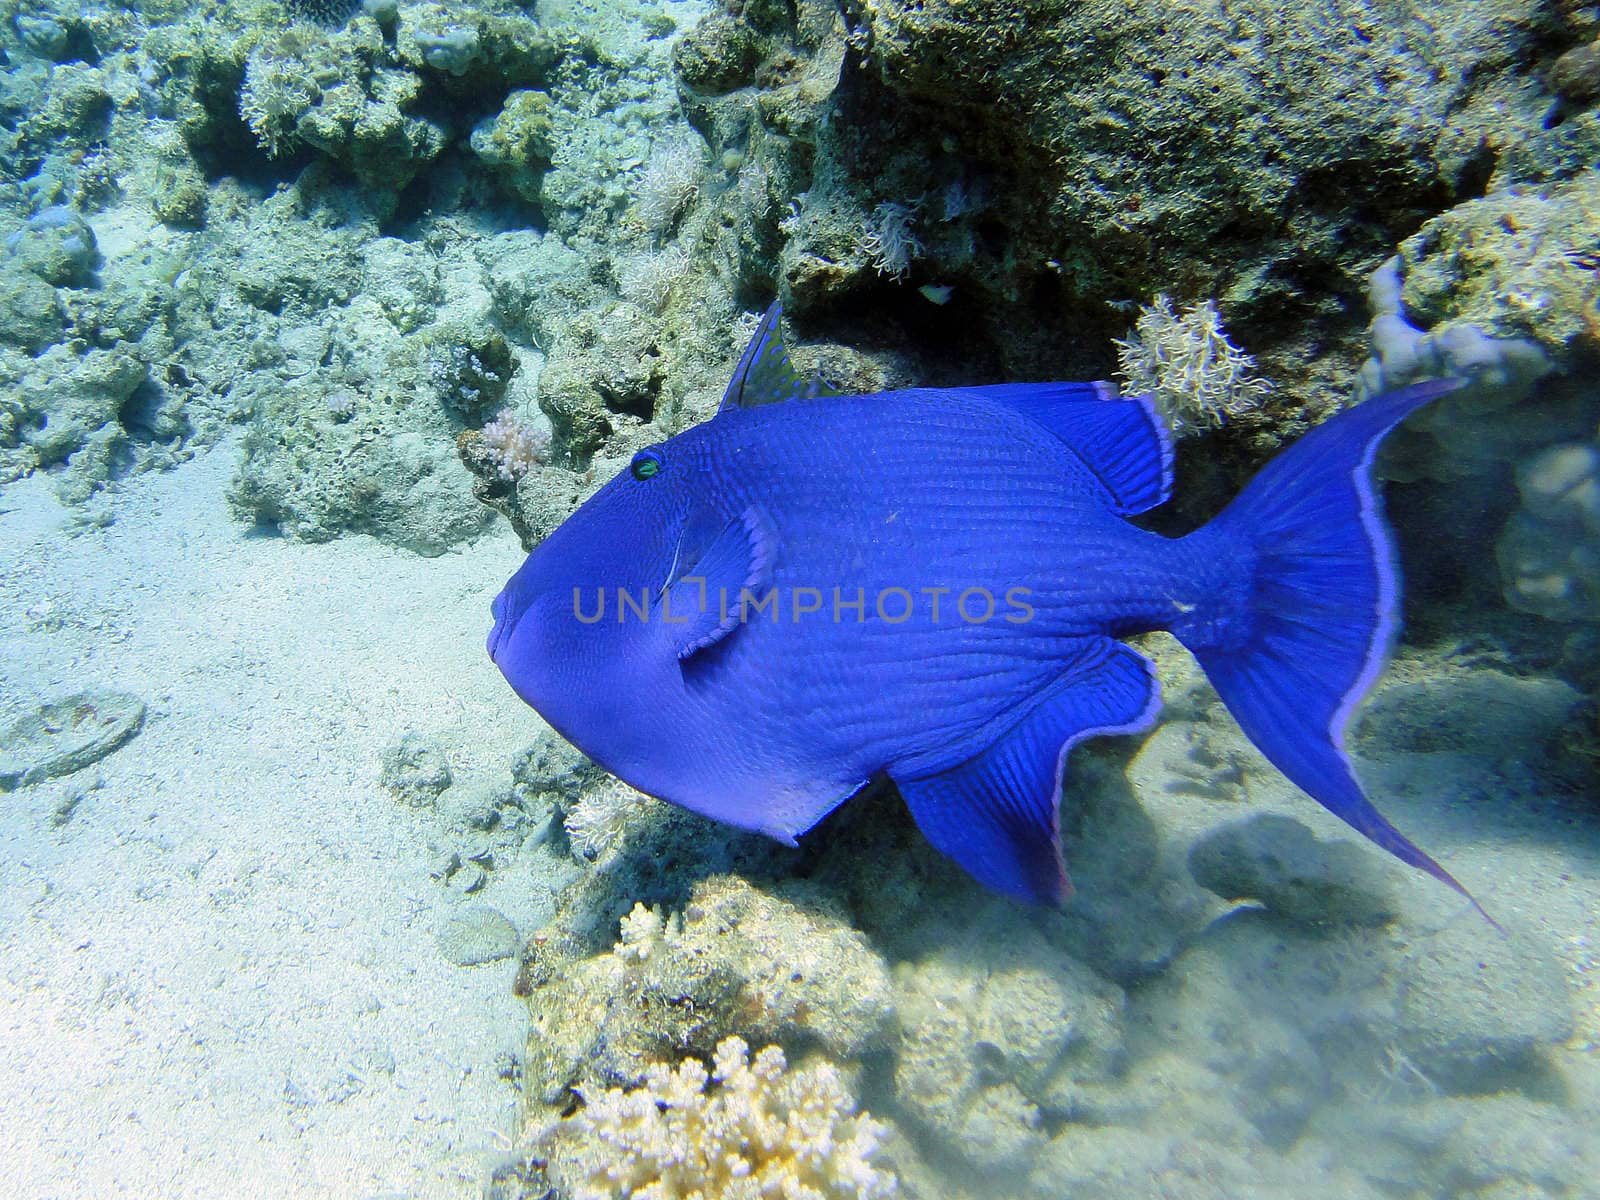 Big blue fish in Red sea, Sharm El Sheikh, Egypt